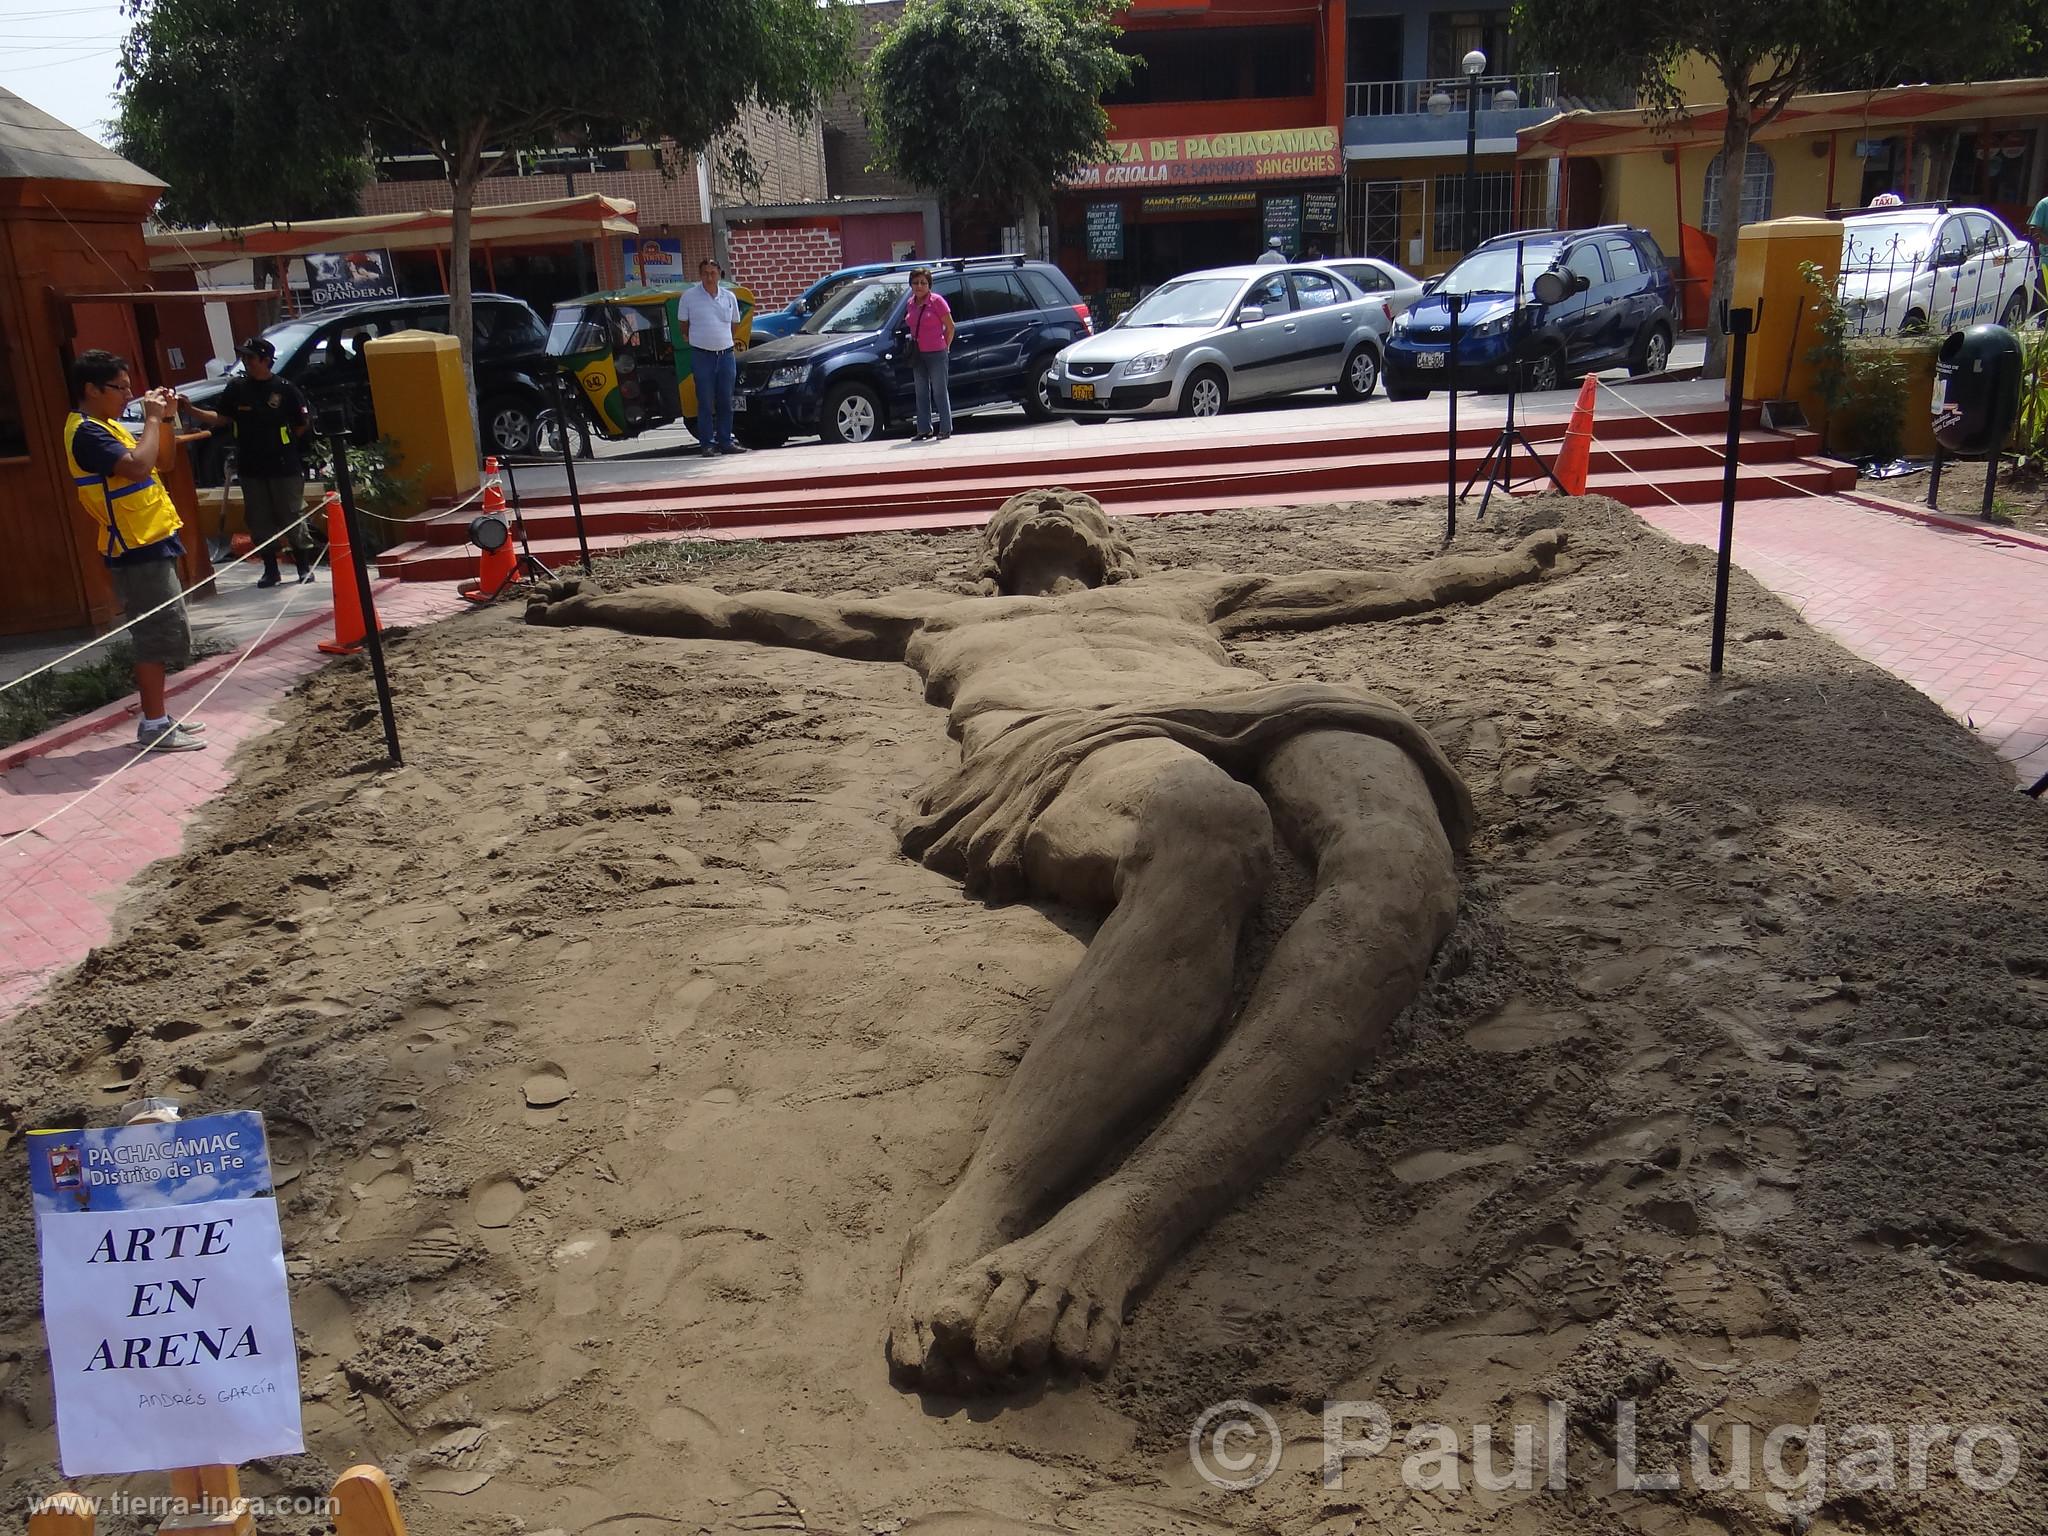 Escultura en la arena, Pachacamac